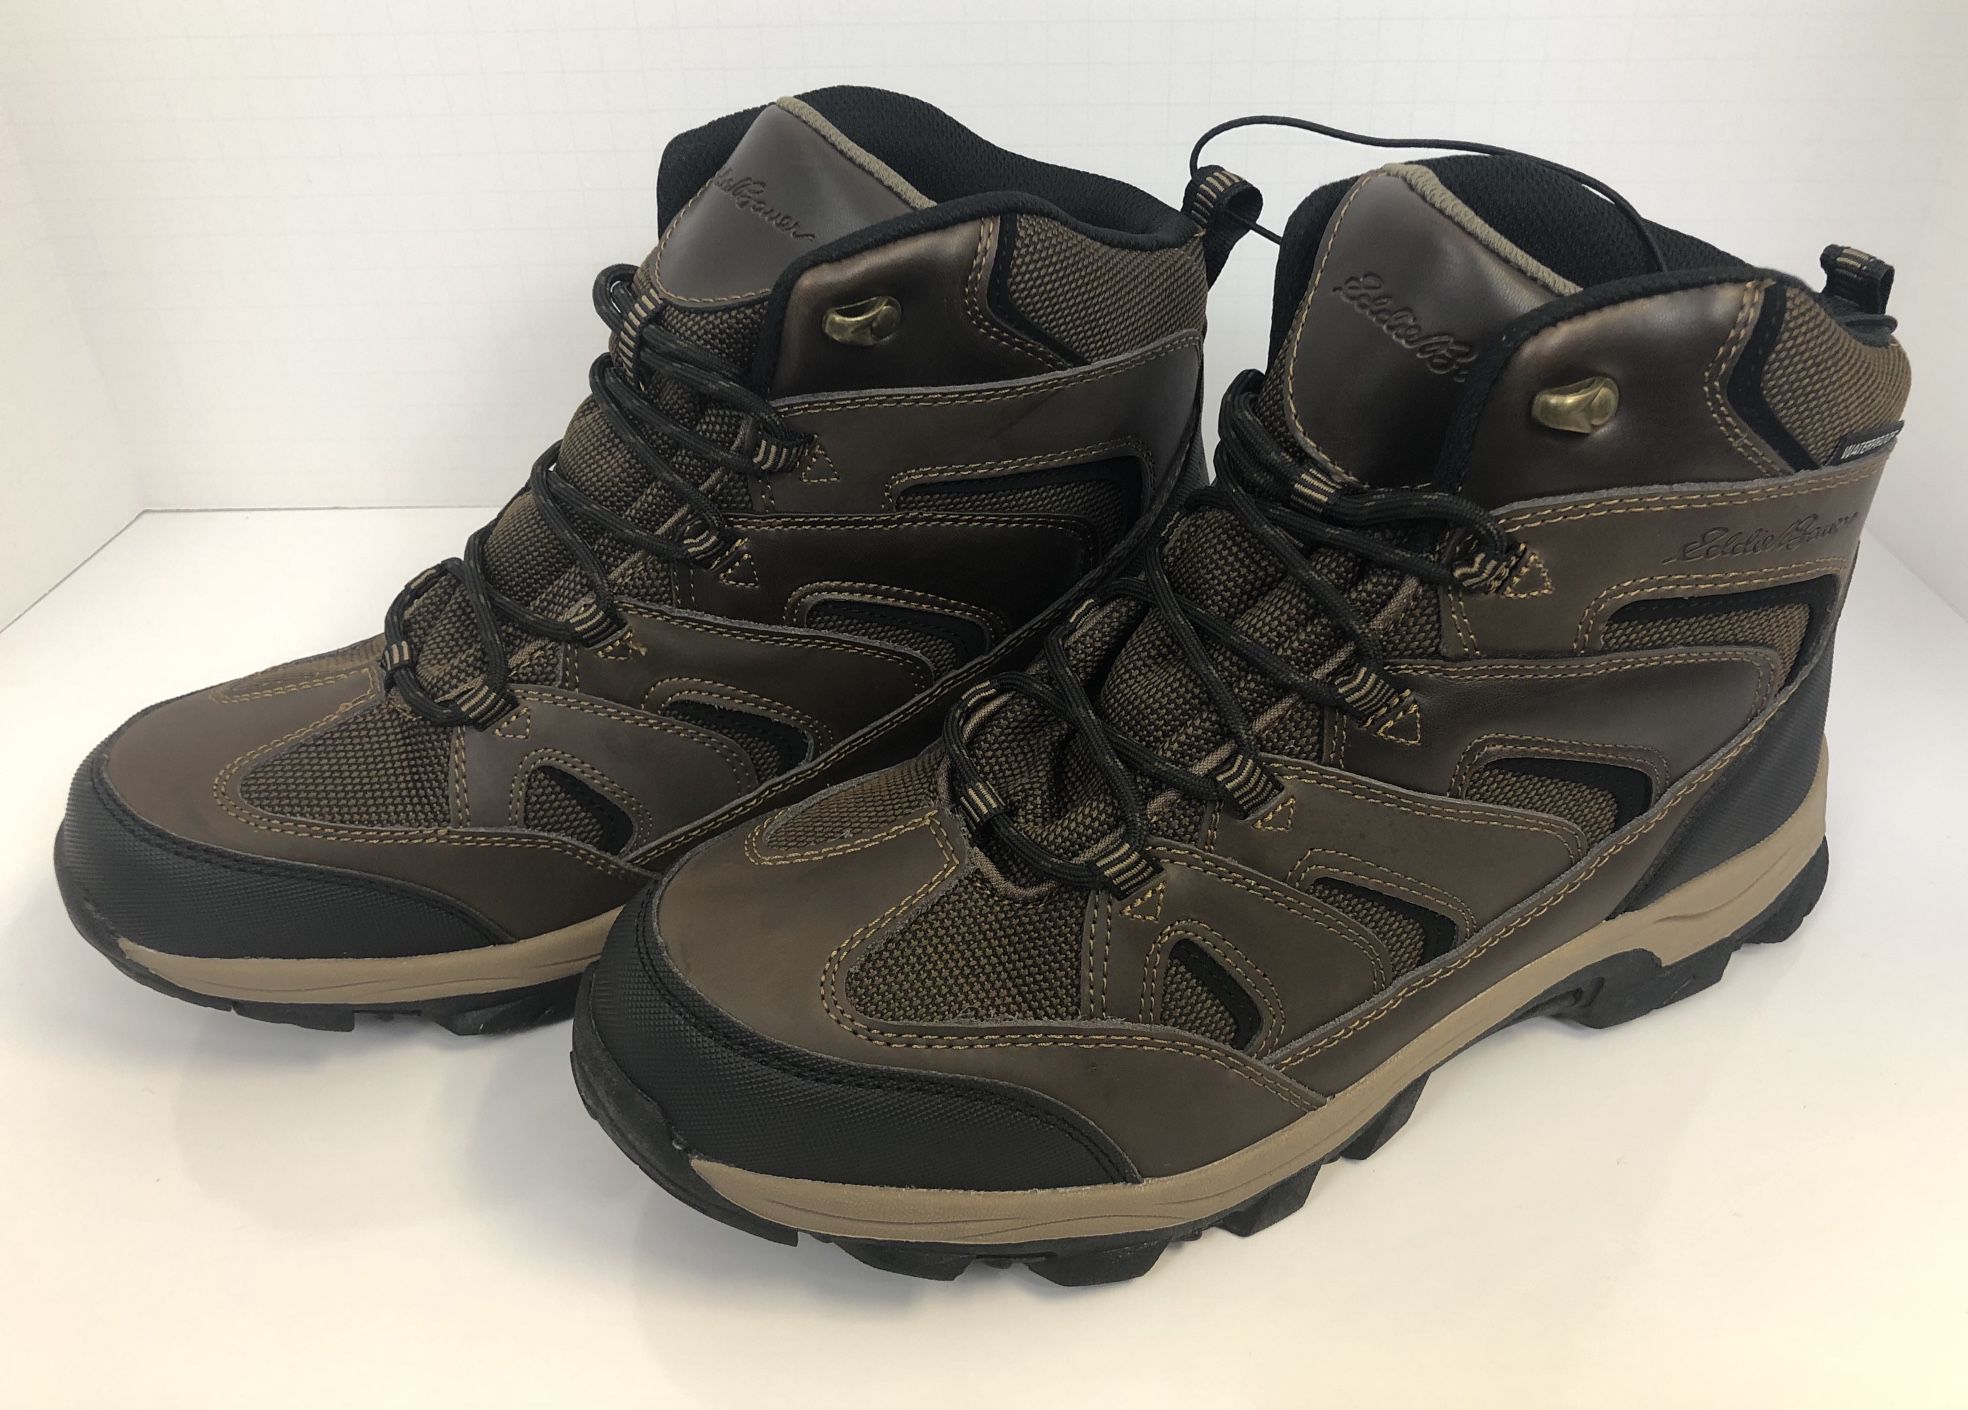 New in Box Eddie Bauer Men’s Fairmont Brown Hiking Boots Waterproof Size 12